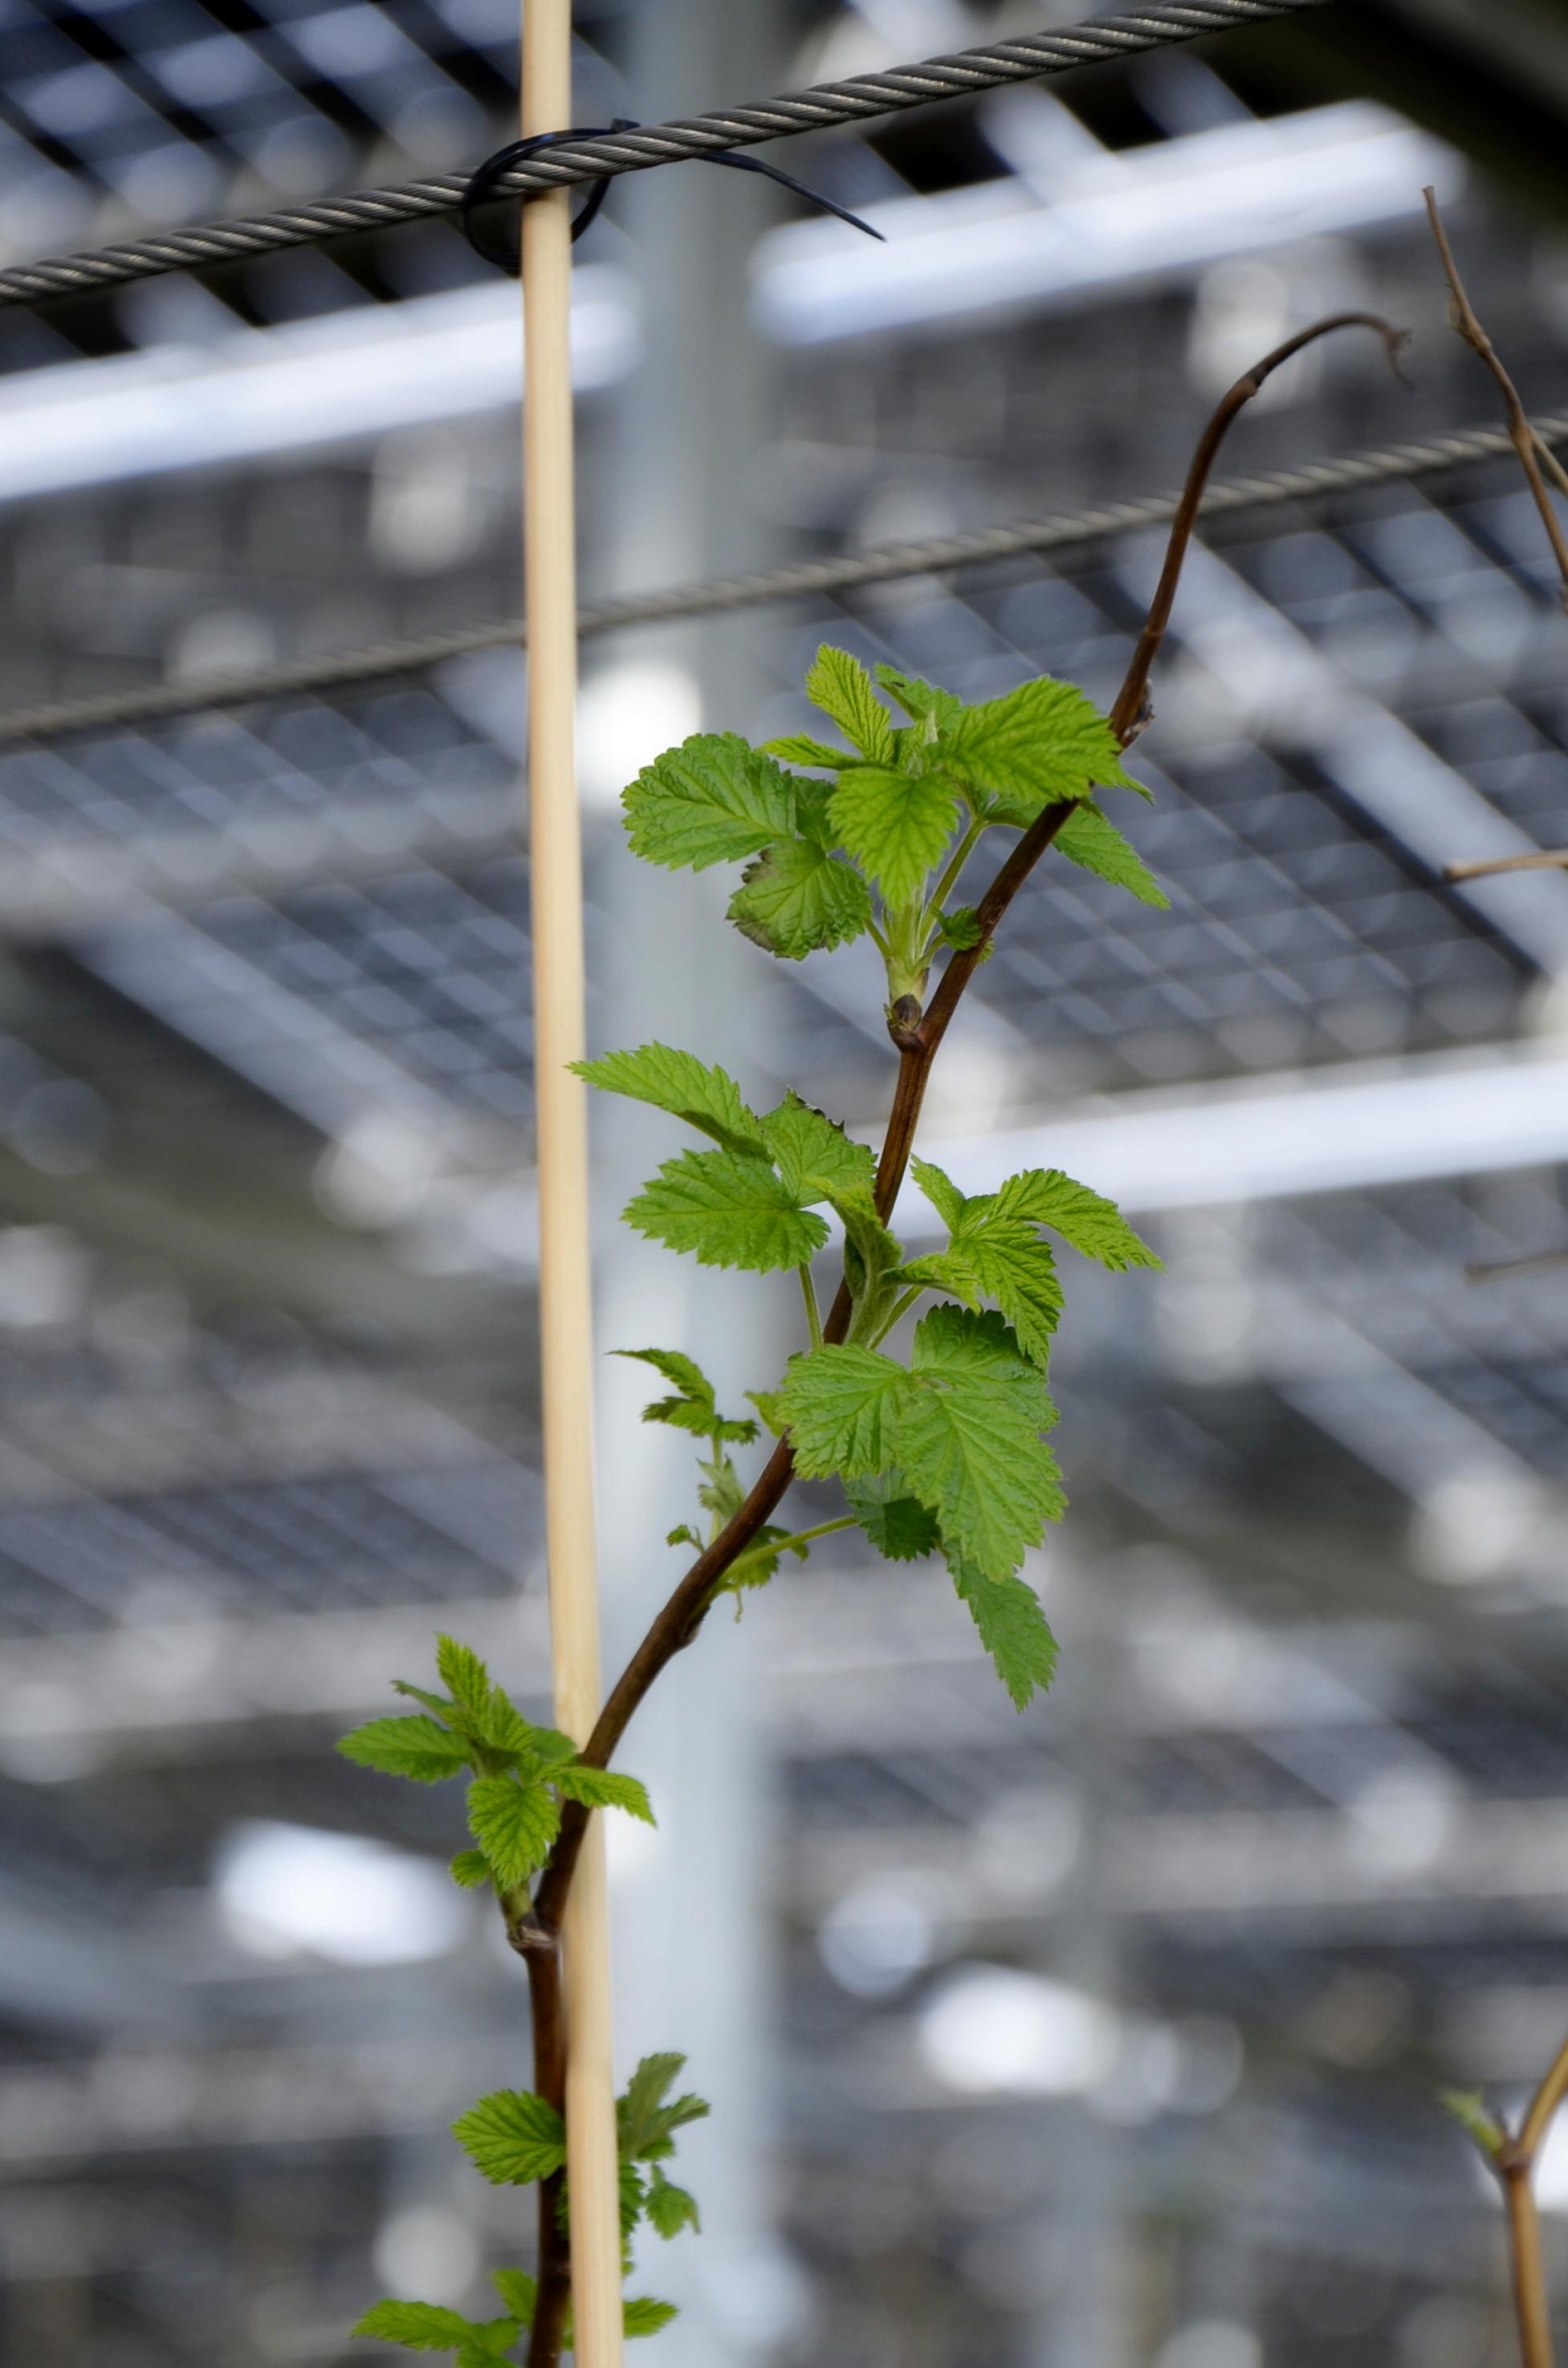 Junge Himbeerpflanze in einer Plantage, darüber unscharf Photovoltaik-Module